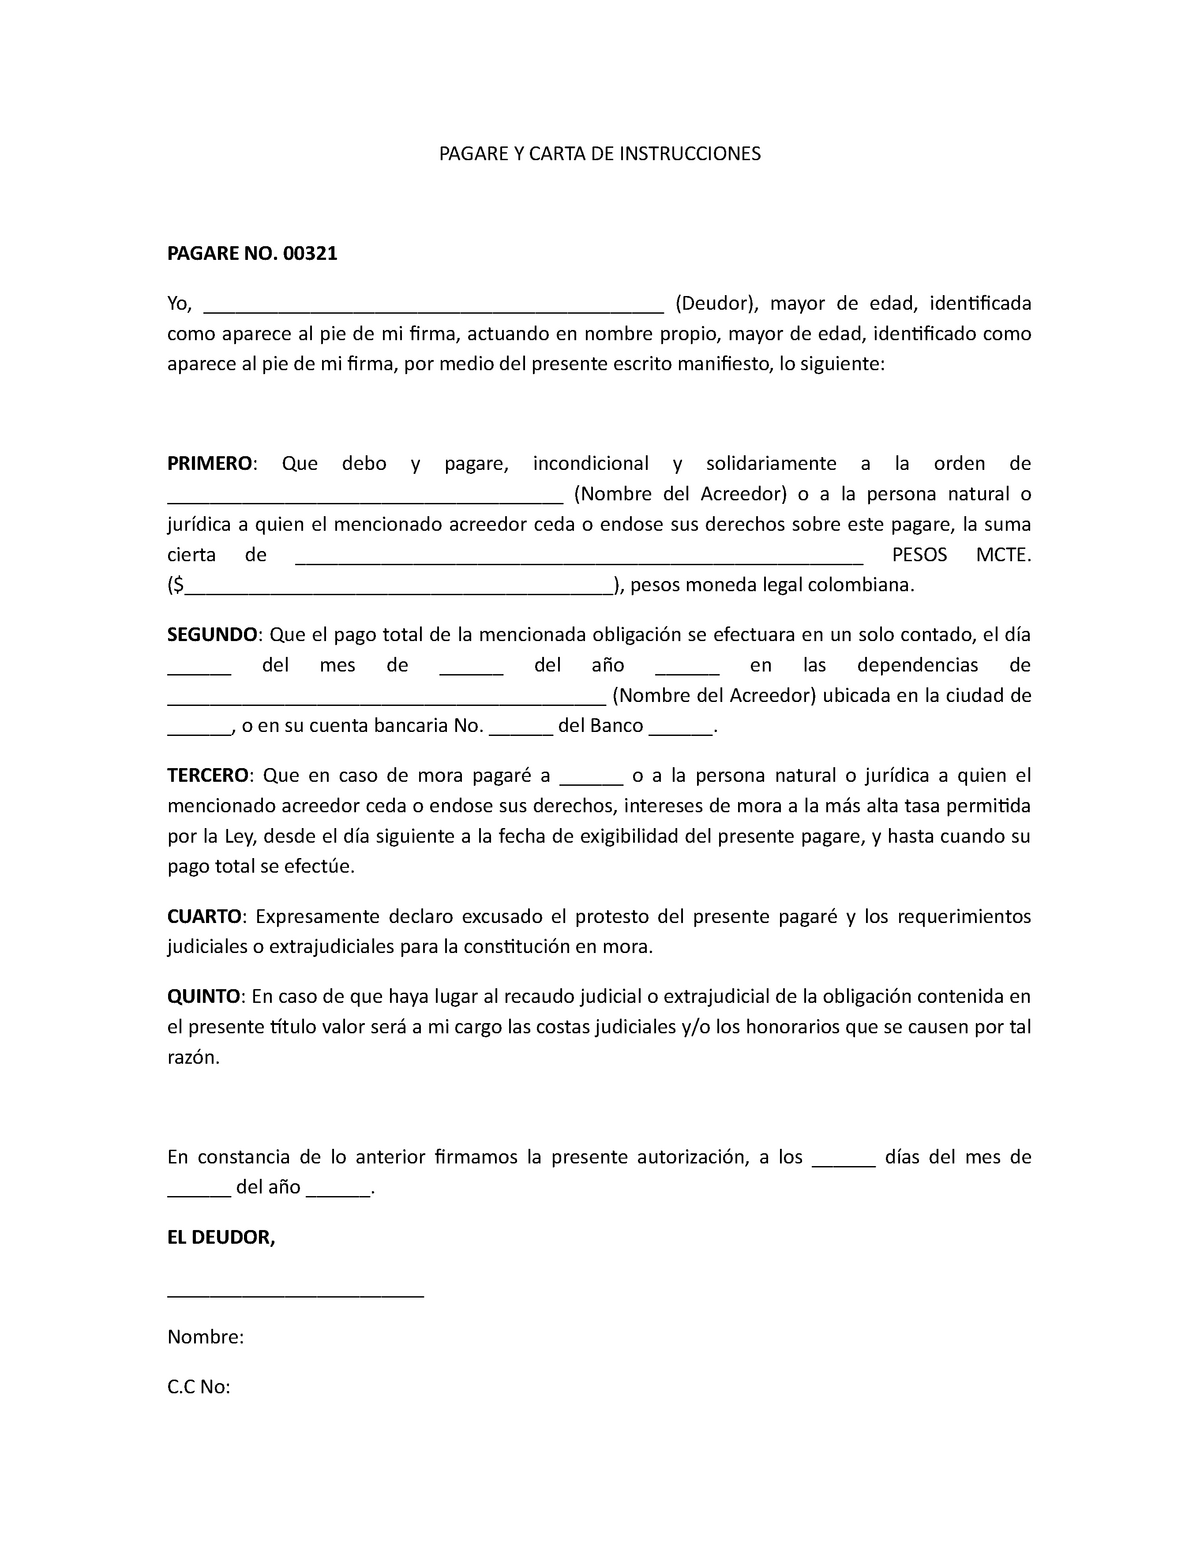 Modelo Pagare Y Carta DE Instrucciones - PAGARE Y CARTA DE INSTRUCCIONES  PAGARE NO. 00321 Yo, - Studocu